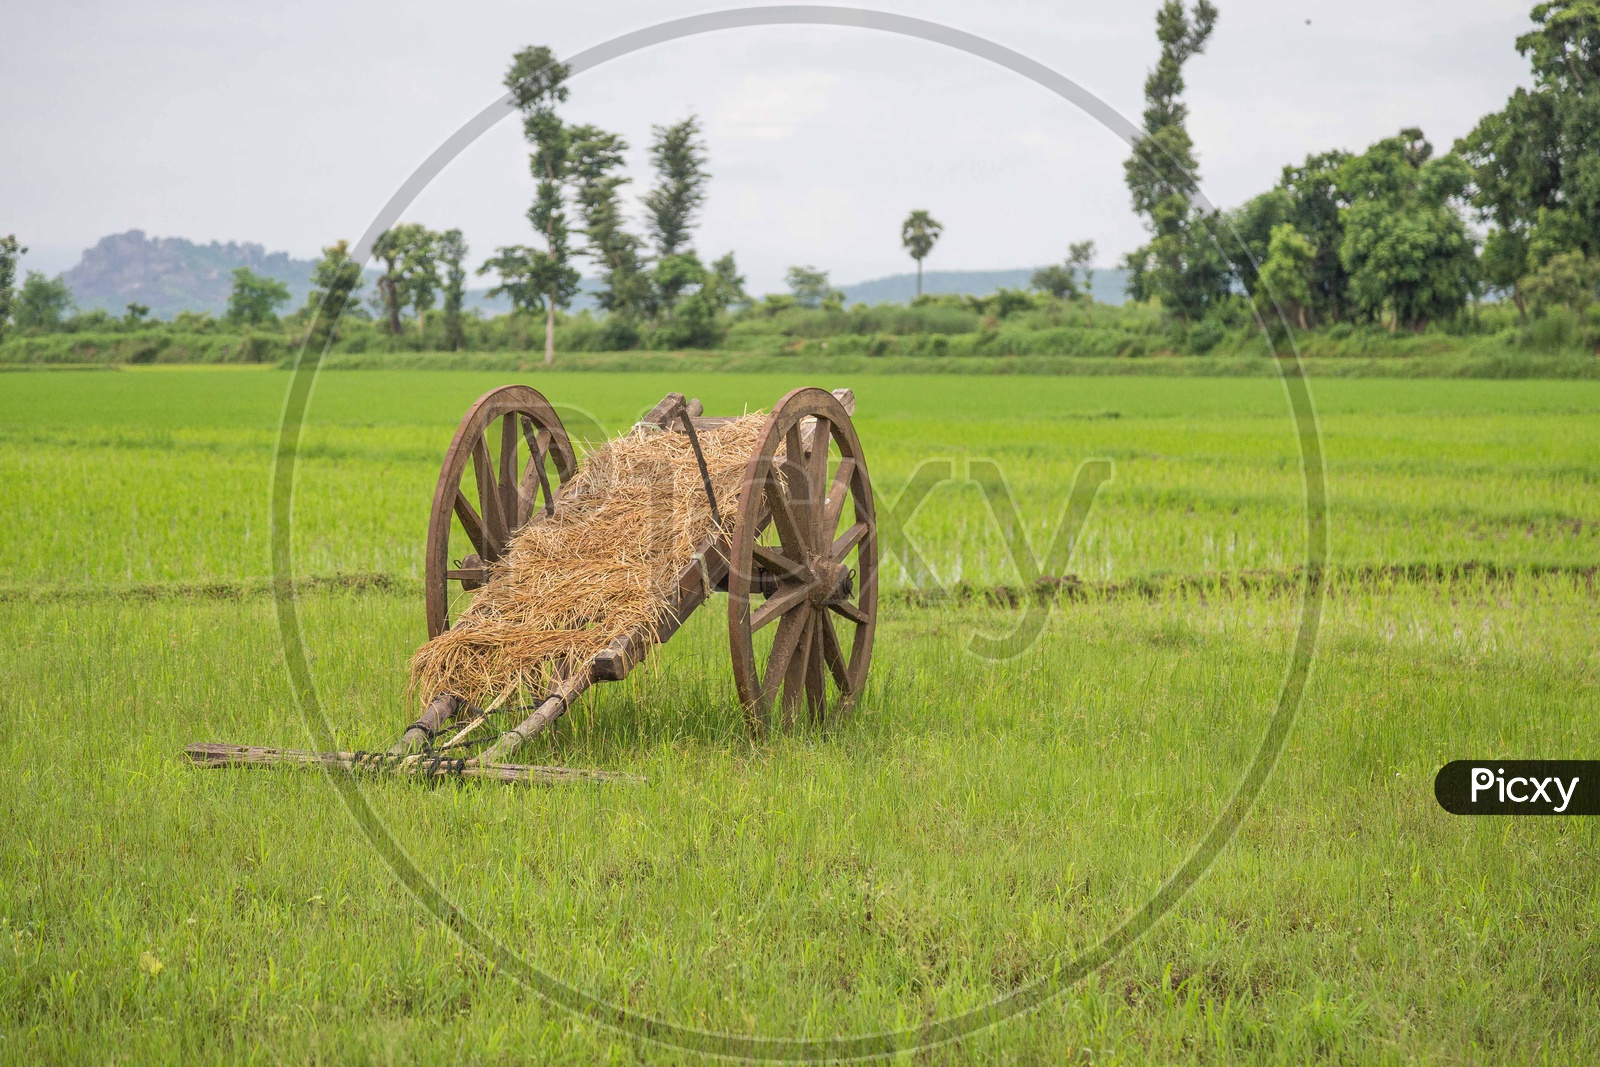 A bullock cart in fields